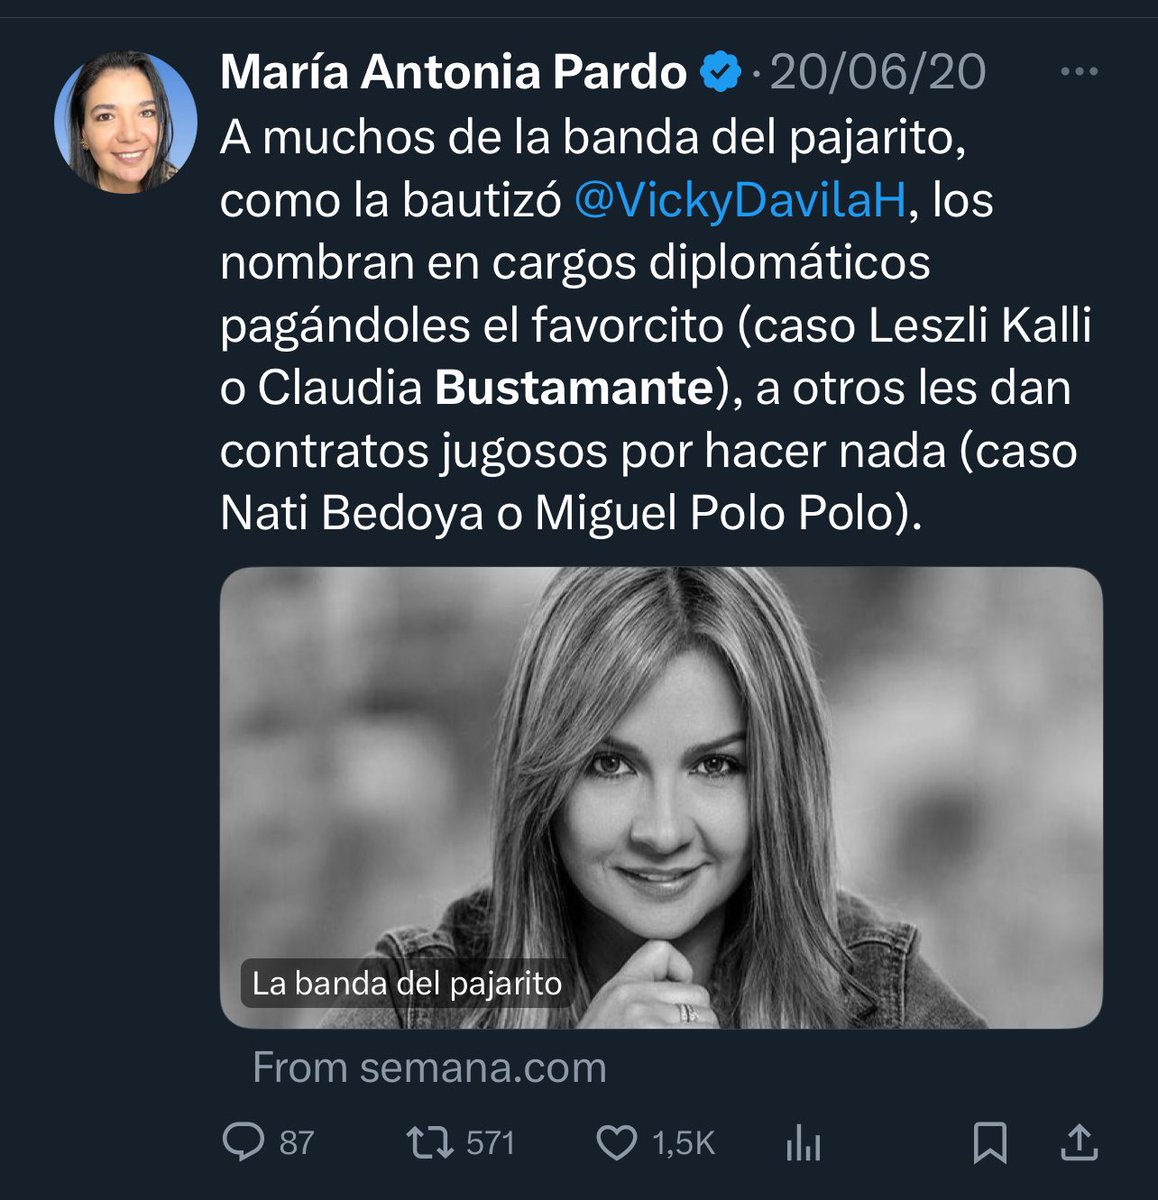 Felicitaciones a la nueva cónsul en Chile, María Antonia Pardo, por ser todo lo que criticaba antes.